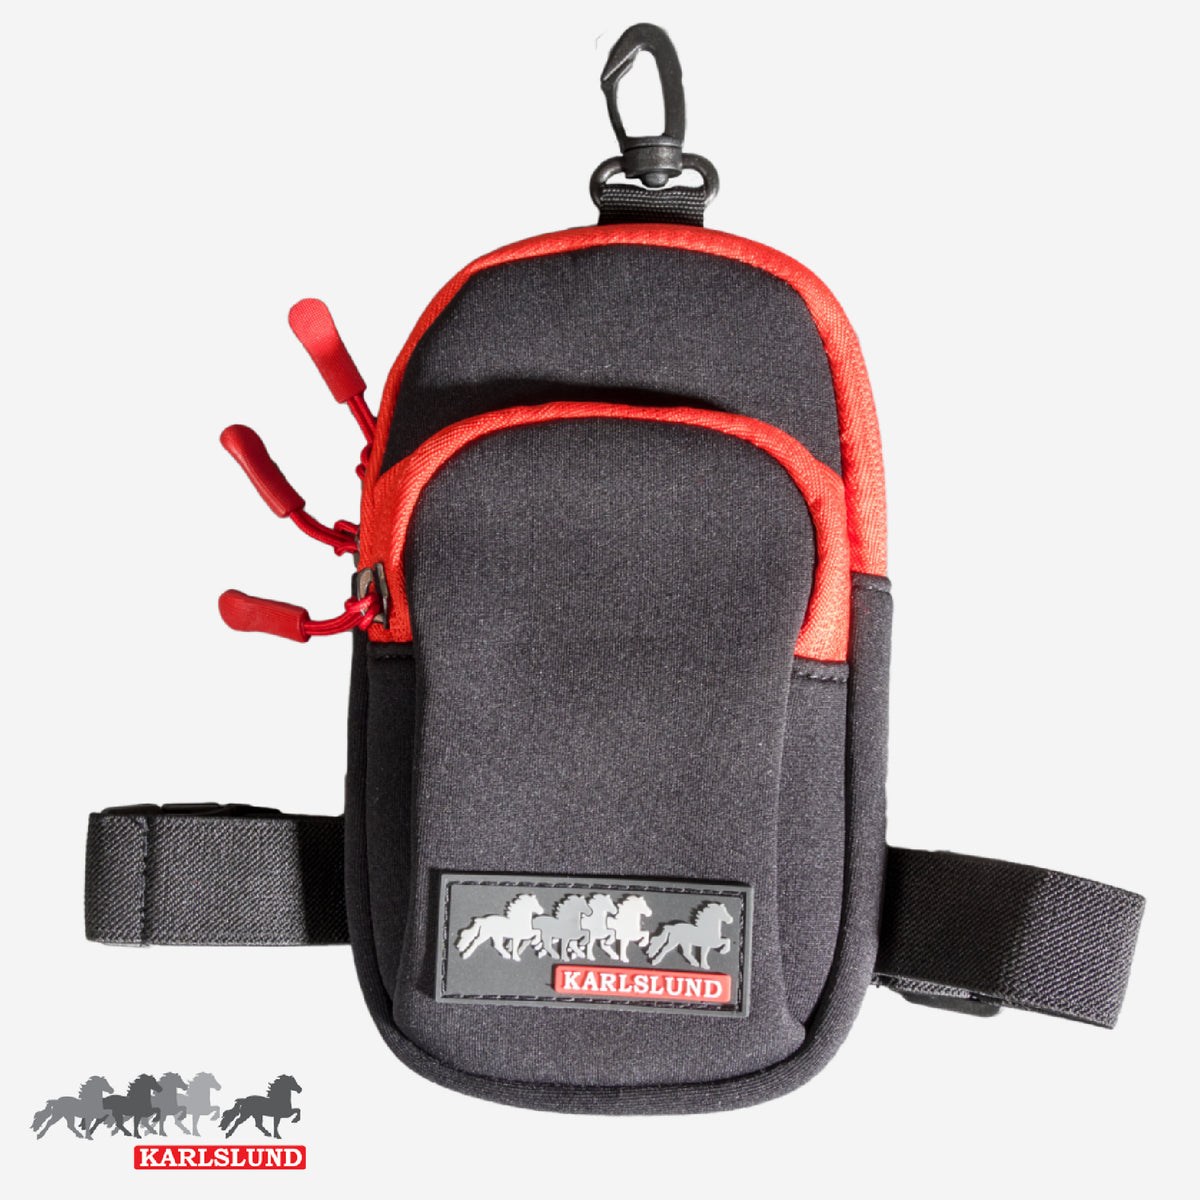 Väska för telefon och nycklar, stabil och vattentät, fästs på ben eller bälte